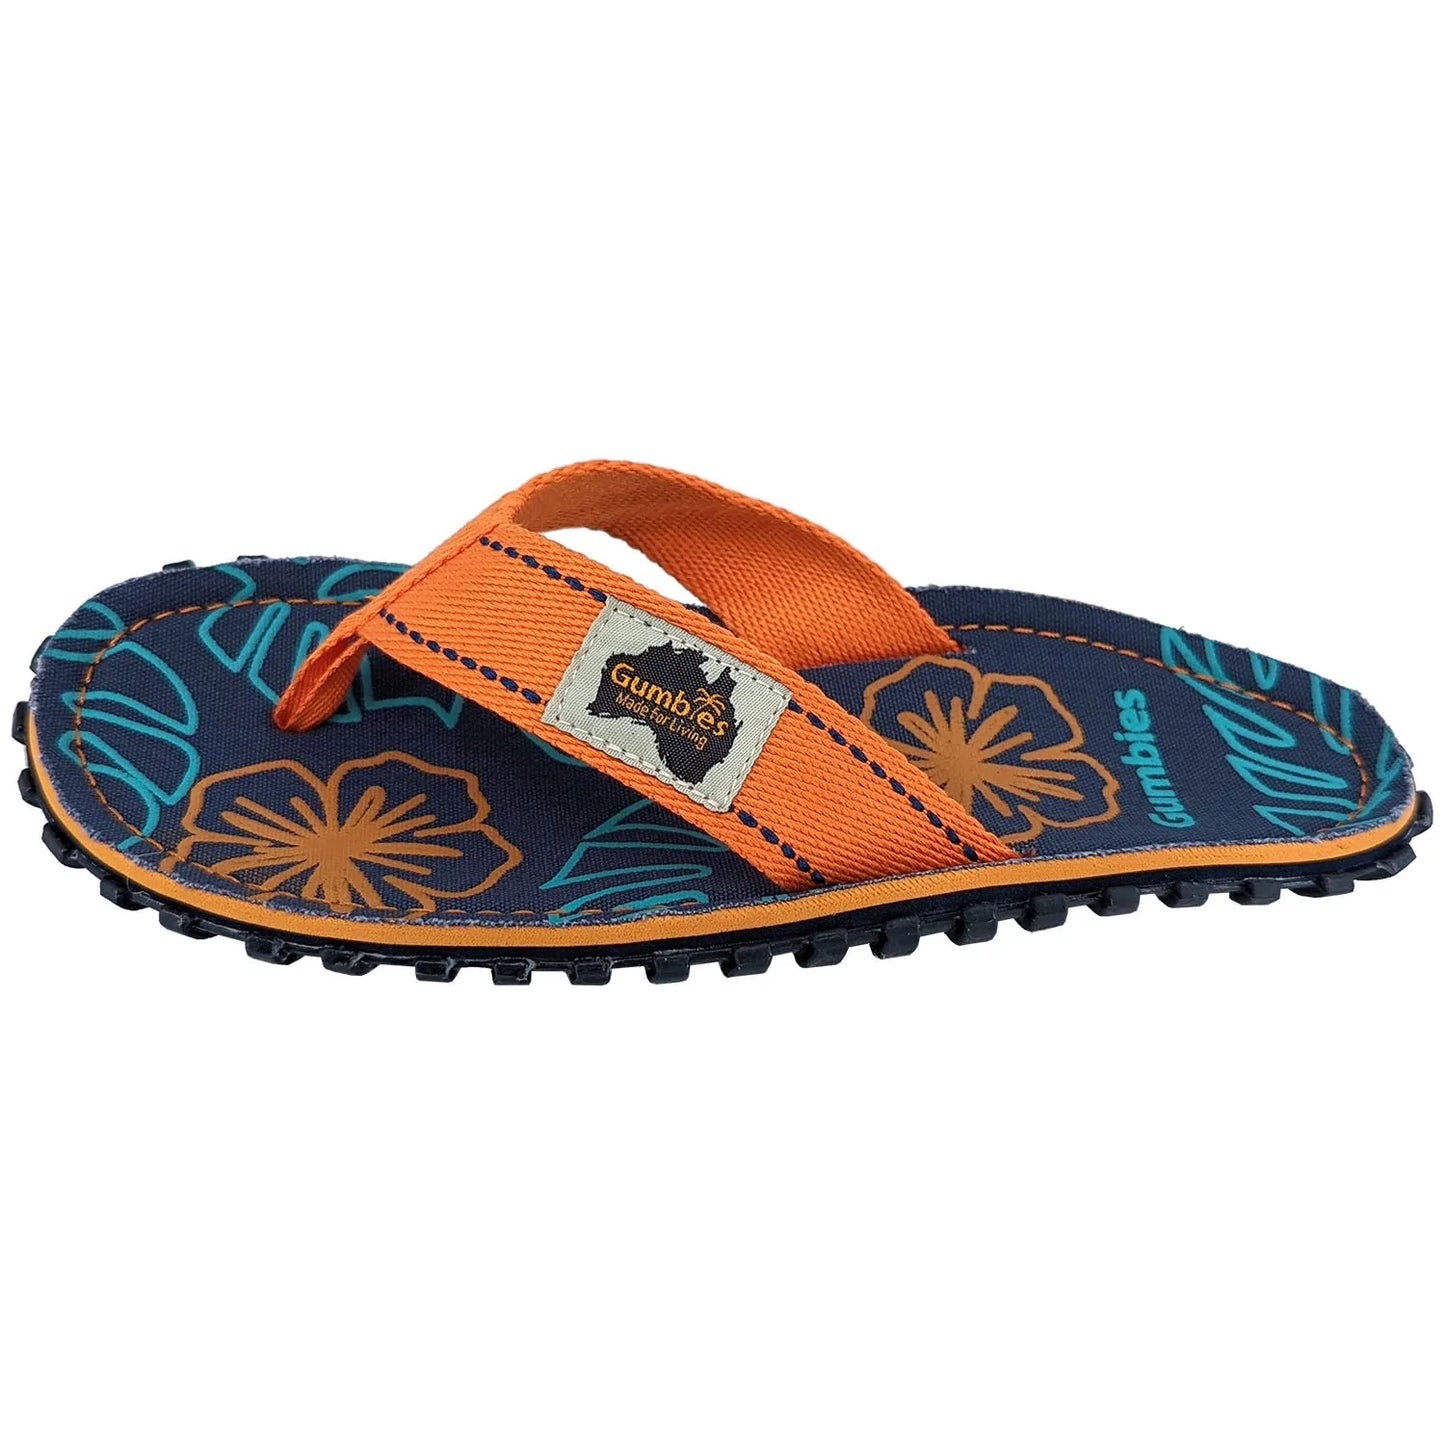 Islander Flip-Flops - Women's - Orange Hibiscus